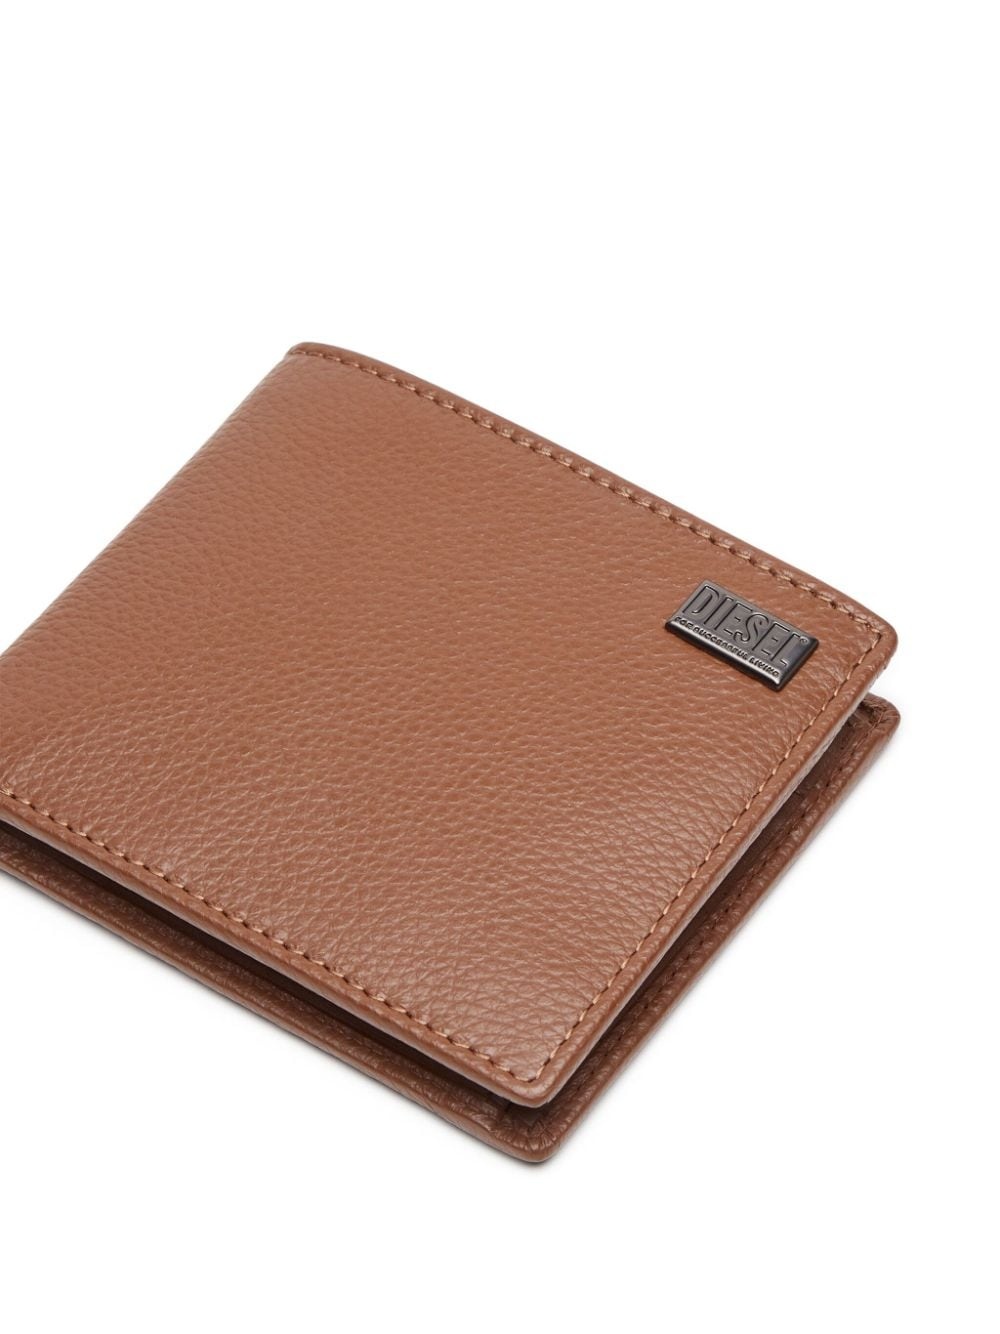 Medal-D leather wallet - 4